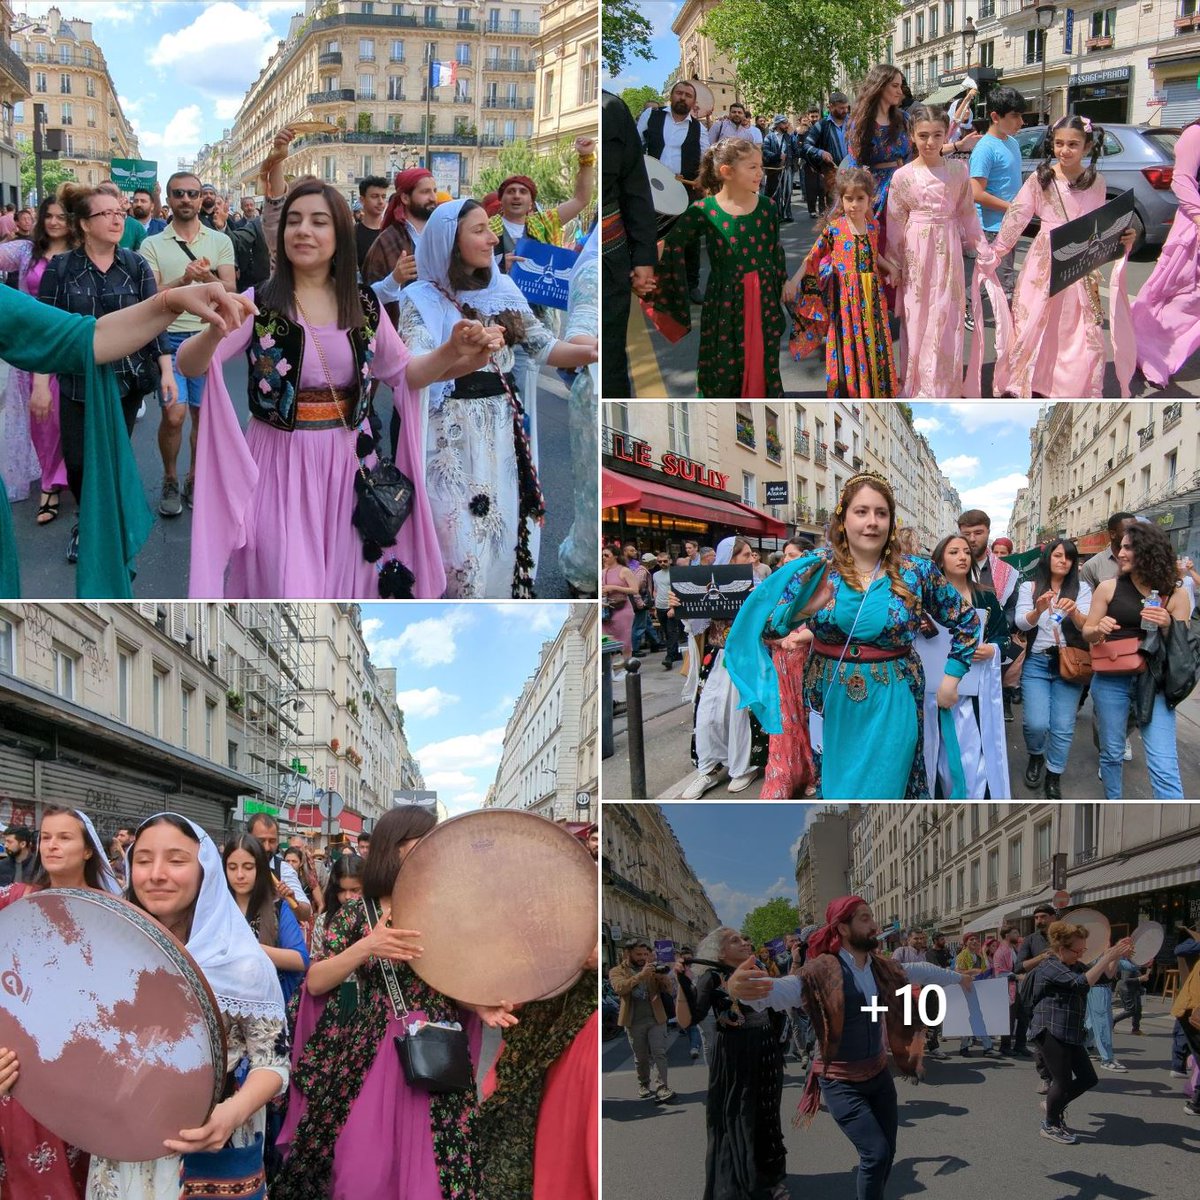 Vent du Kurdistan à Paris

Samedi, centaines de personnes réunies pour le défilé folklorique en ouverture du Festival culturel kurde Paris ont fait vibrer tout Paris au son de la musique & des chants kurdes

(Festivala çanda Kurd a Parîsê)
 
#sortiraparis #quefaireaparis #Culture